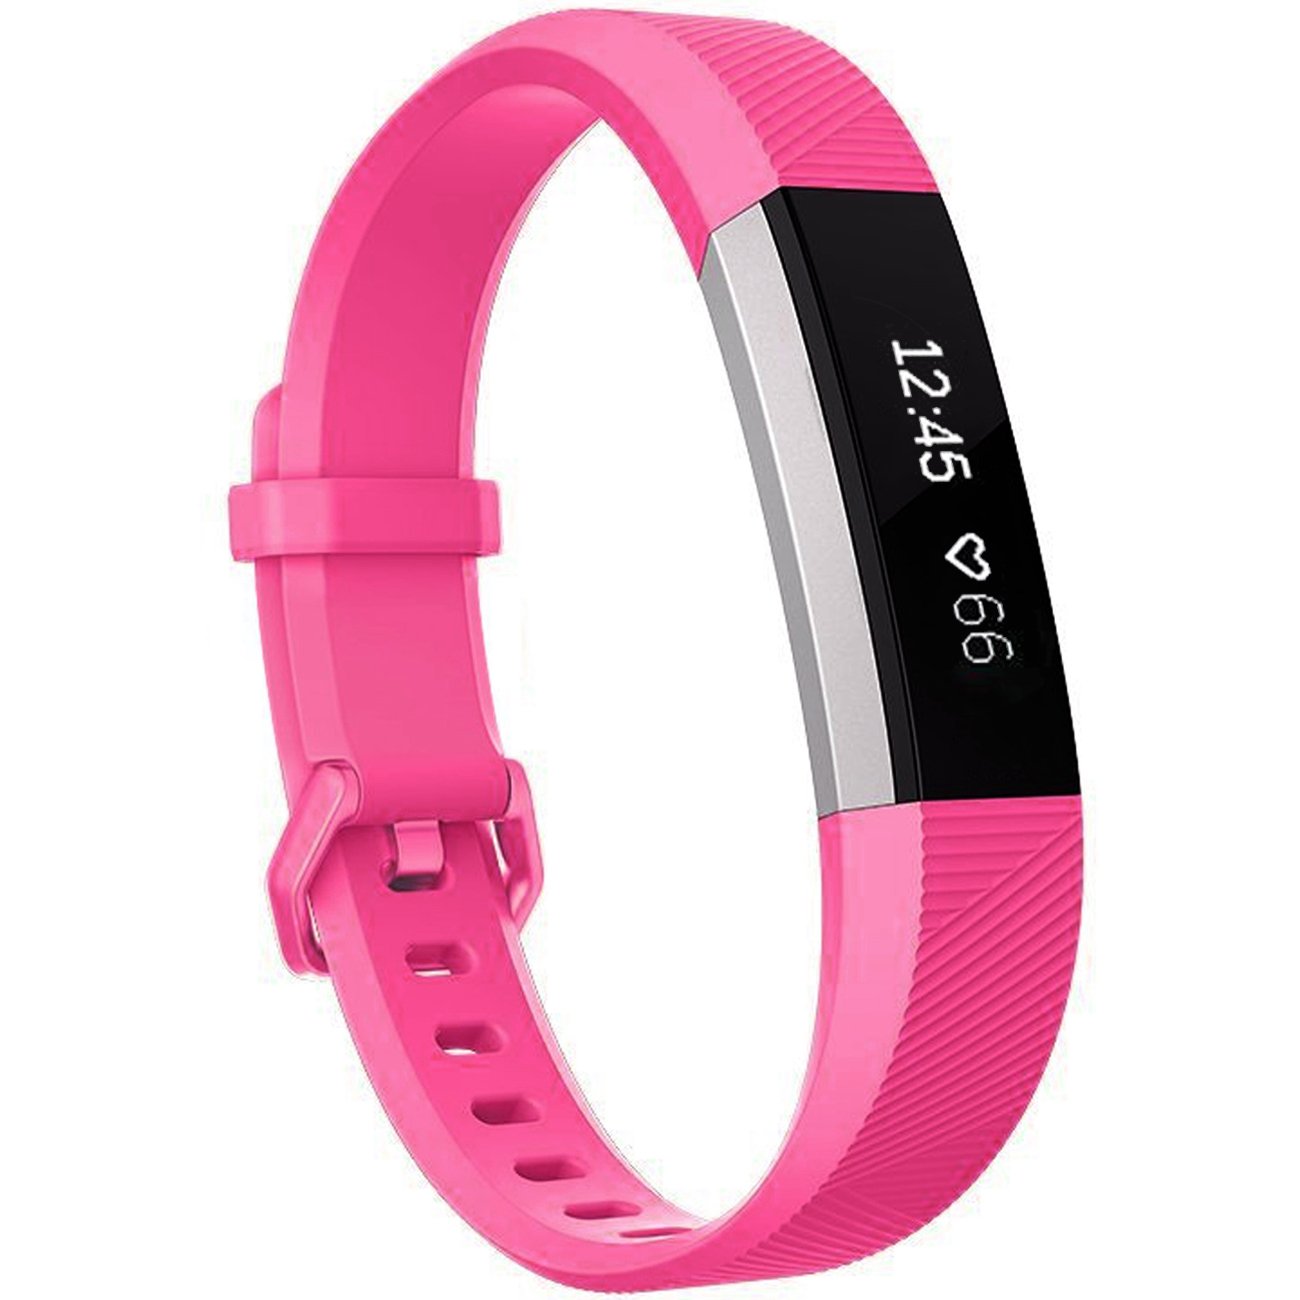  12色 シリコン時計バンド 交換 FitbitアルタHR リストバンド シリコンストラップ クラスプ スマートリストバンド時計  | バリエーション:ピンク